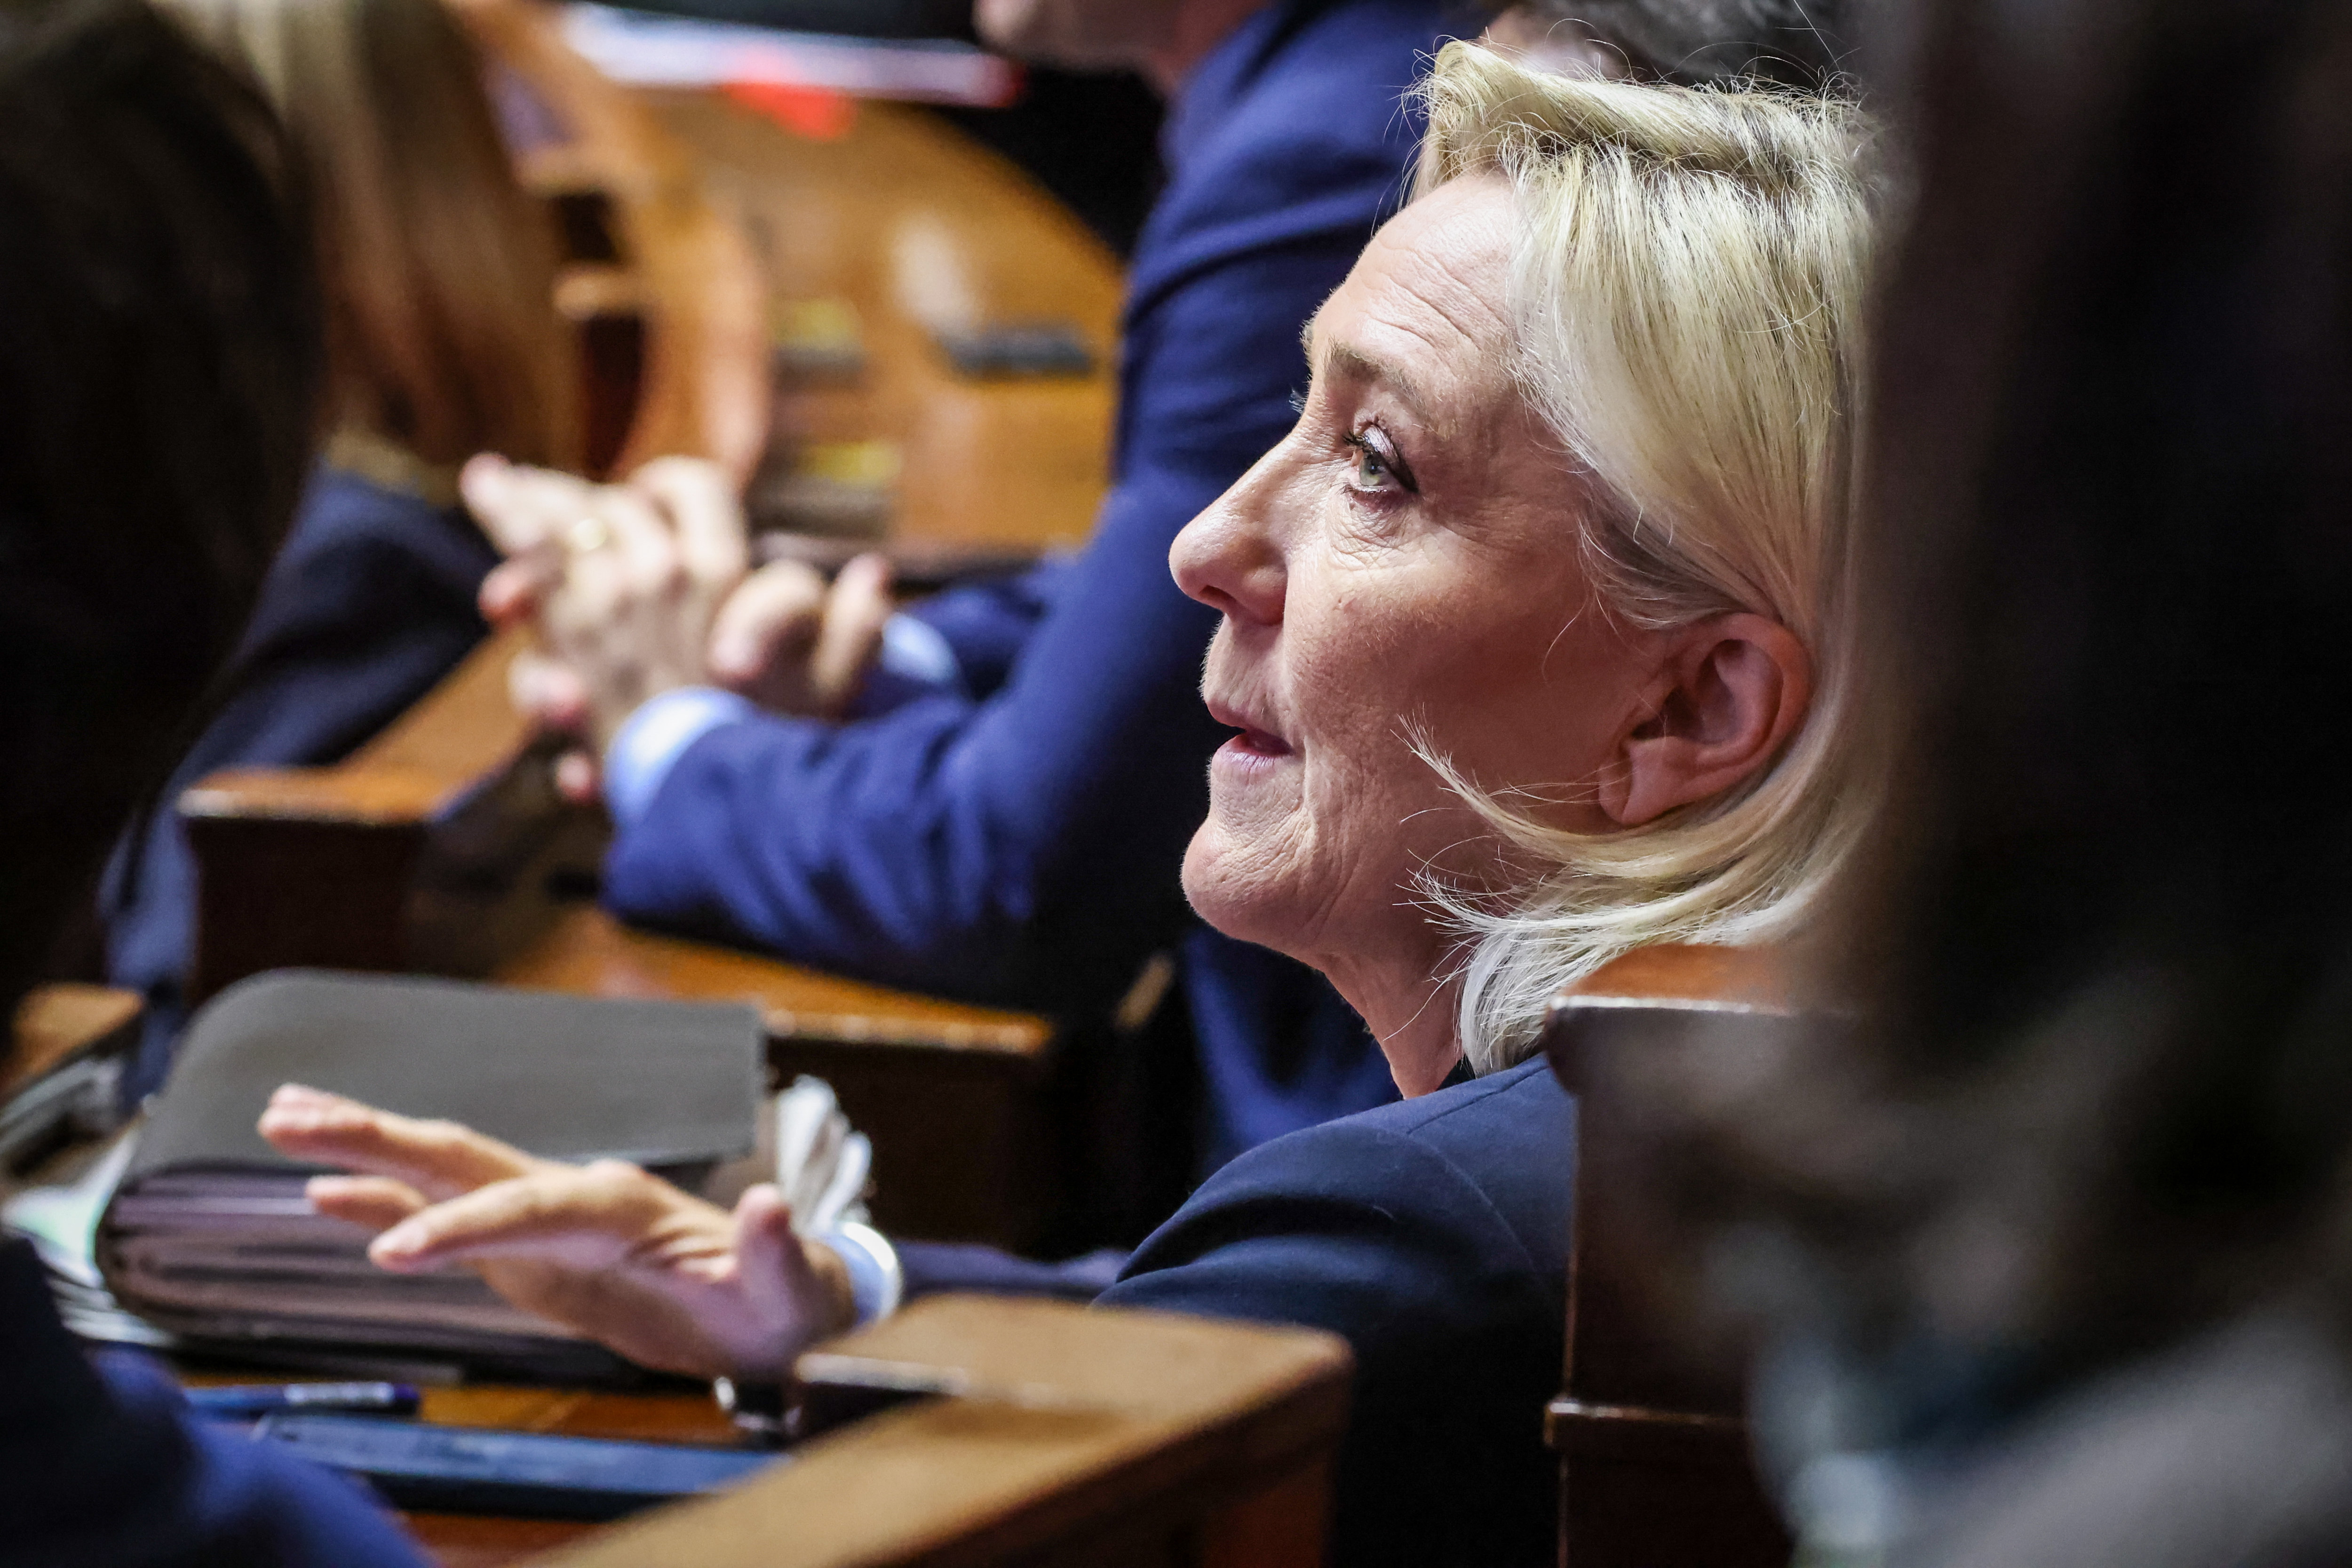 Marine Le Pen, députée du Pas-de-Calais, préside actuellement le groupe parlementaire du Rassemblement national (RN) à l'Assemblée nationale. LP/Fred Dugit